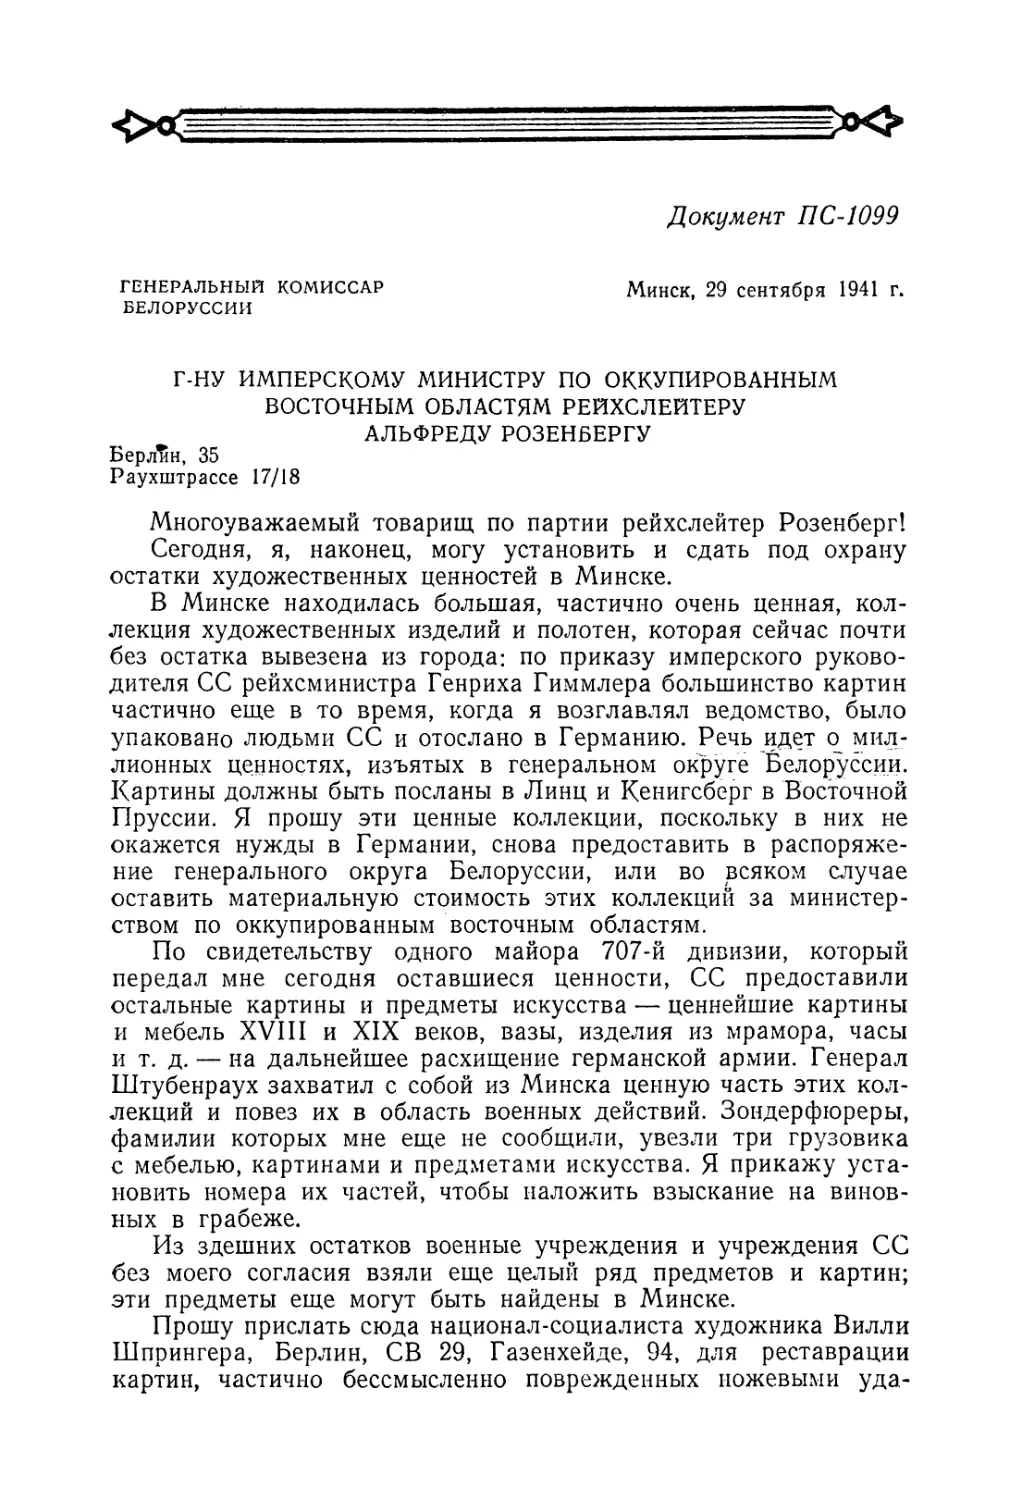 Письмо генерального комиссара Белоруссии Кубе Розенбергу от 29 сентября 1941 г.